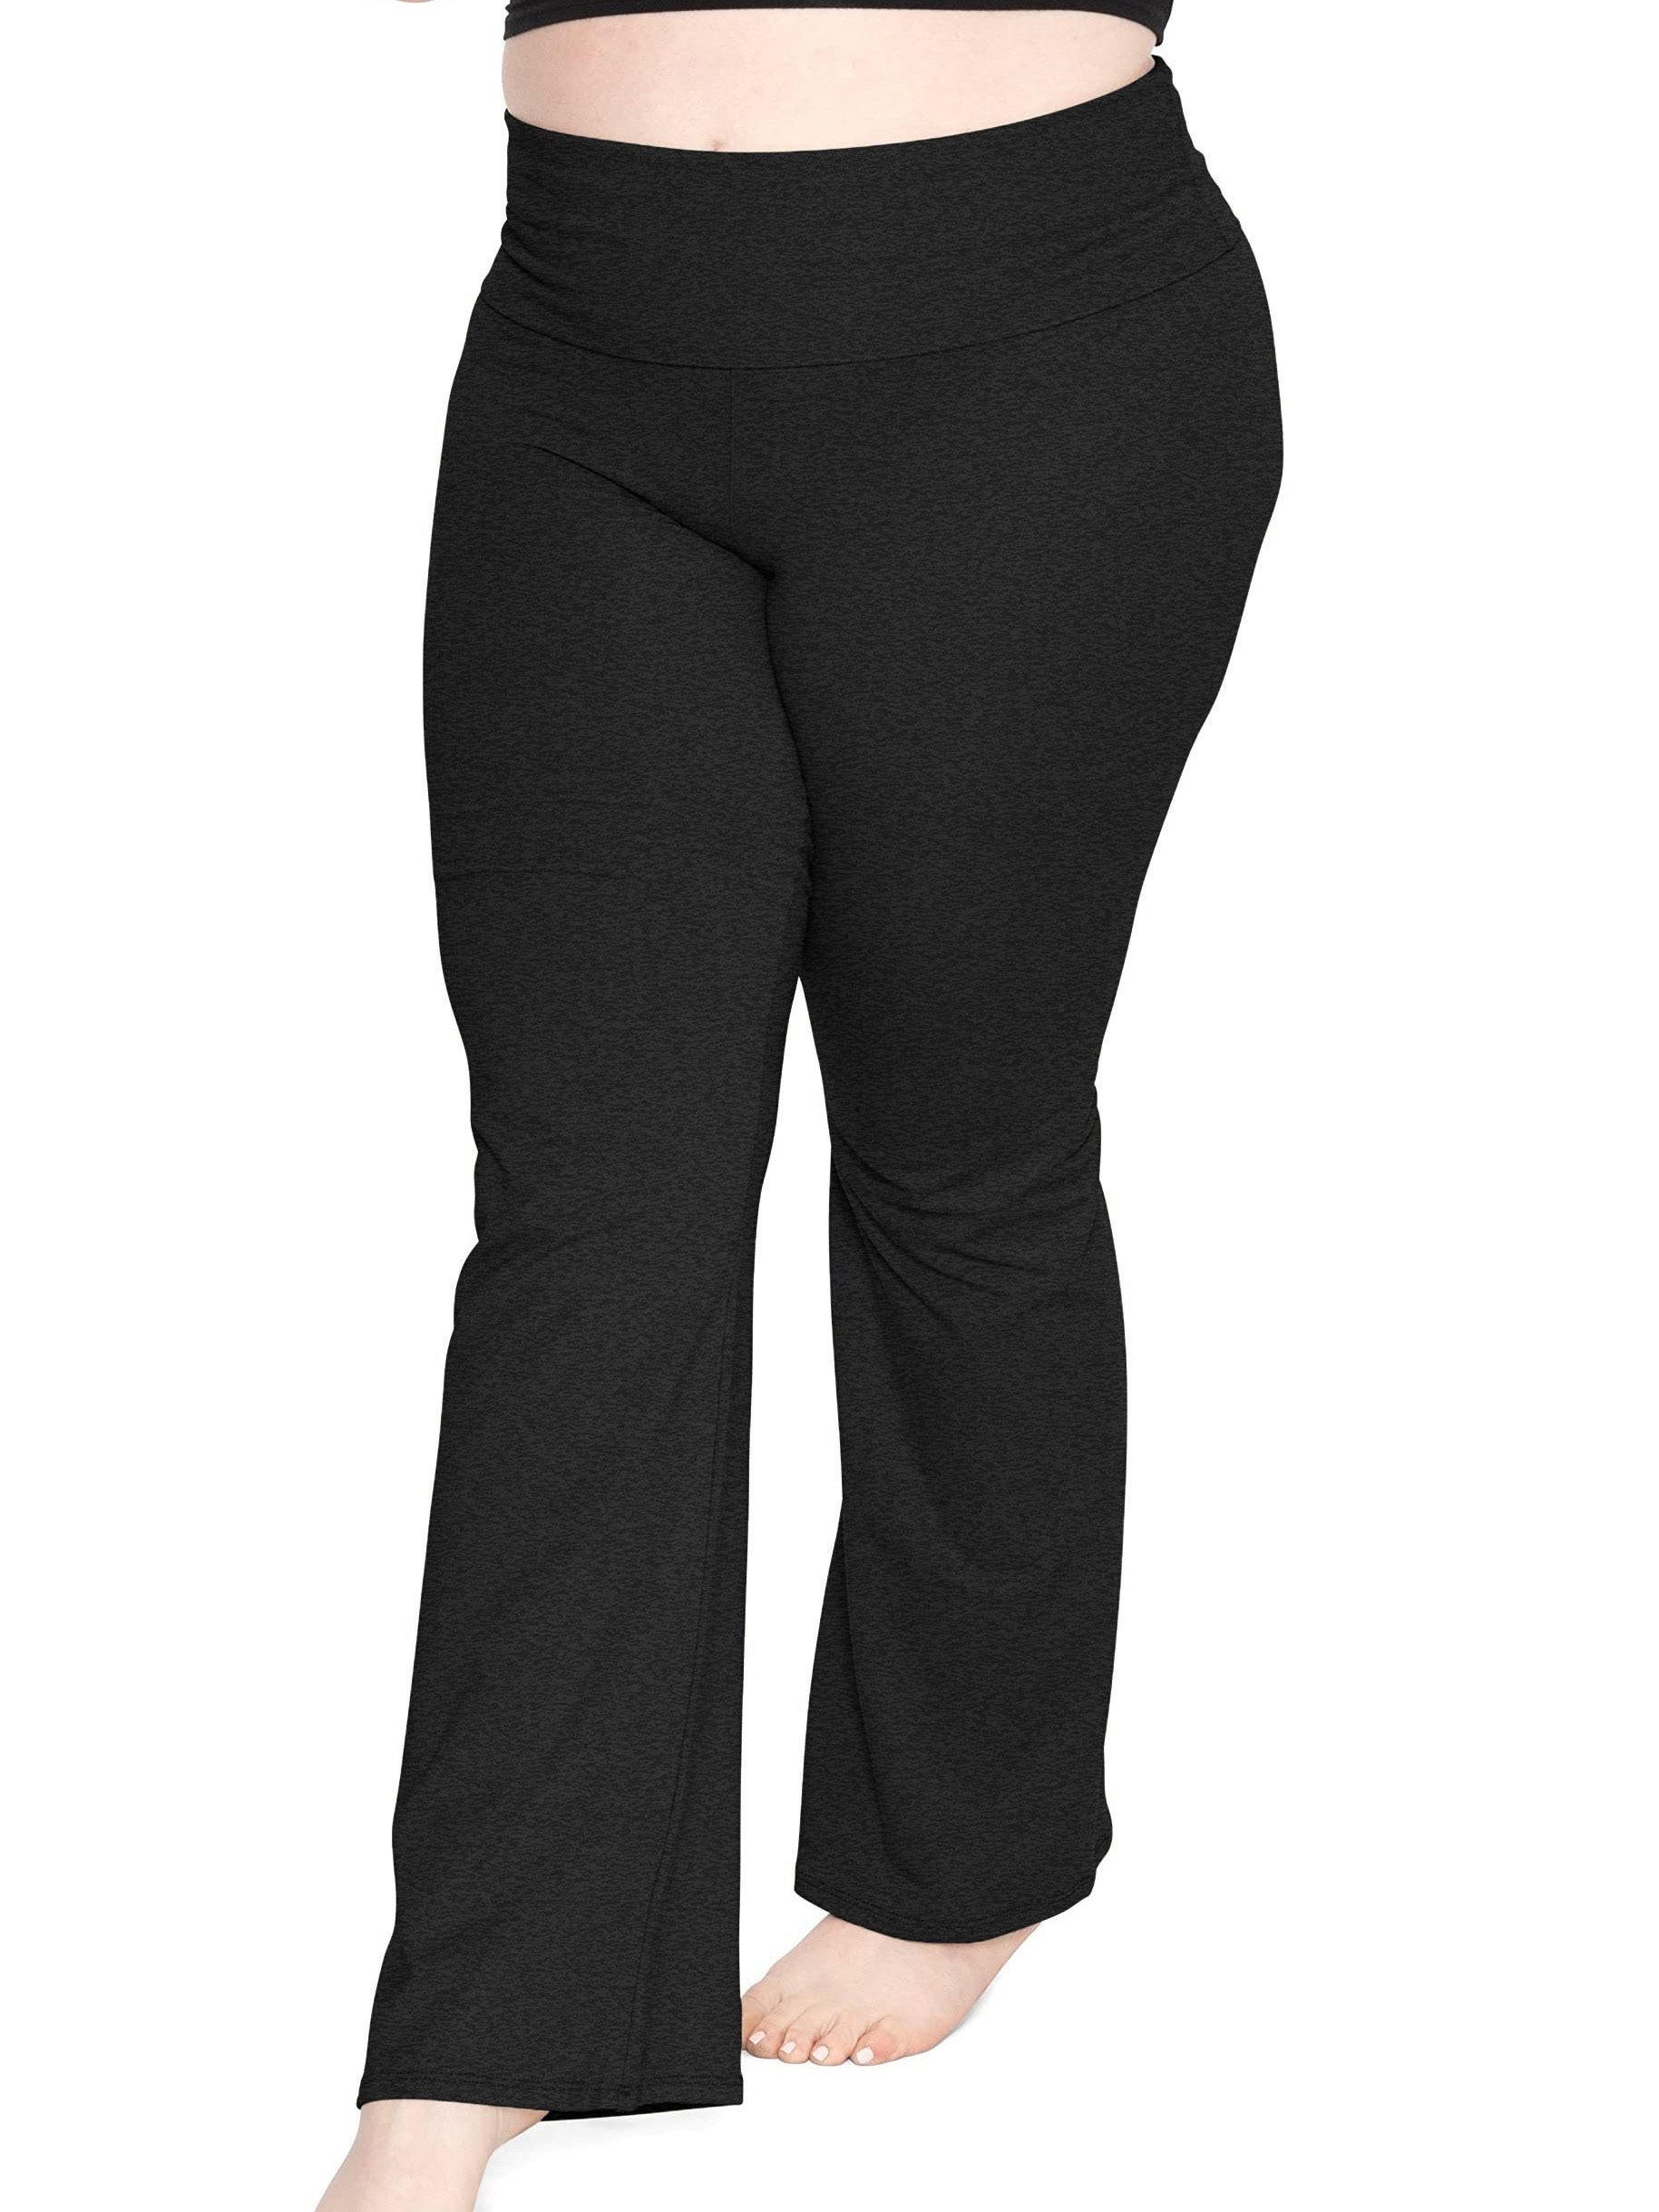 Plus Size Women's Pants NZ: Curve Pants